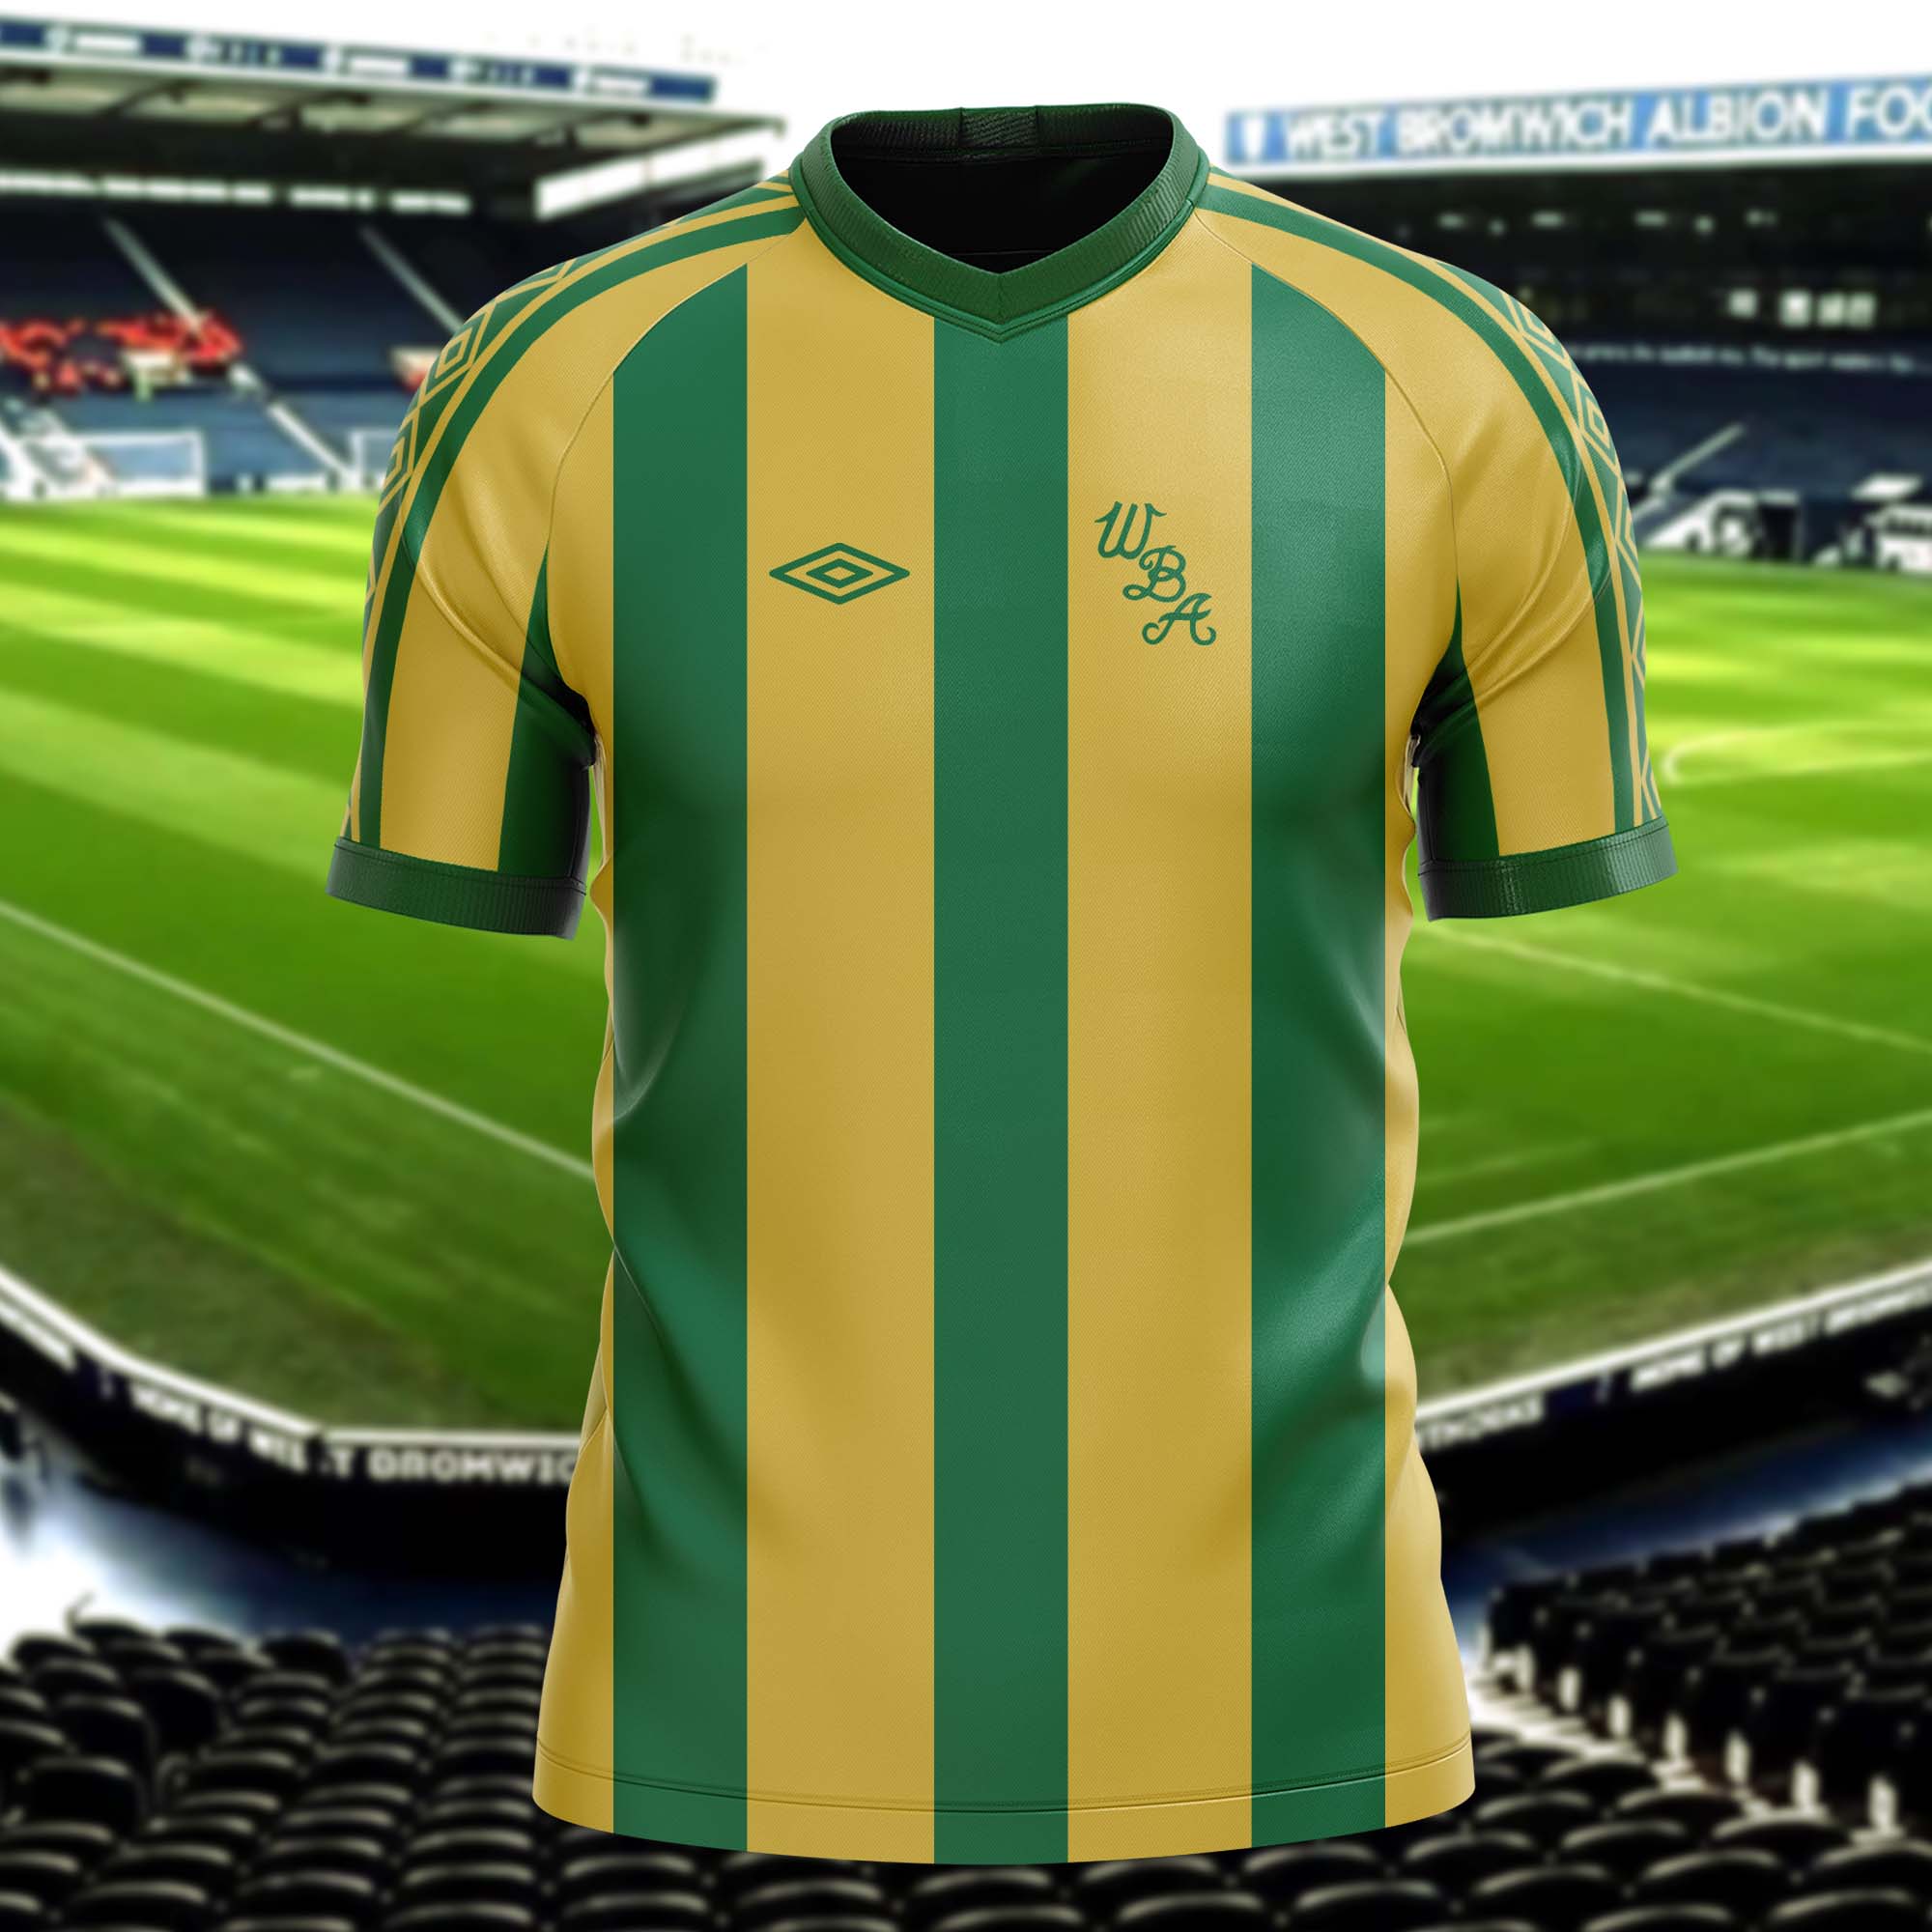 West Bromwich Albion 1977-78 Away Kit Retro Shirt PT54303